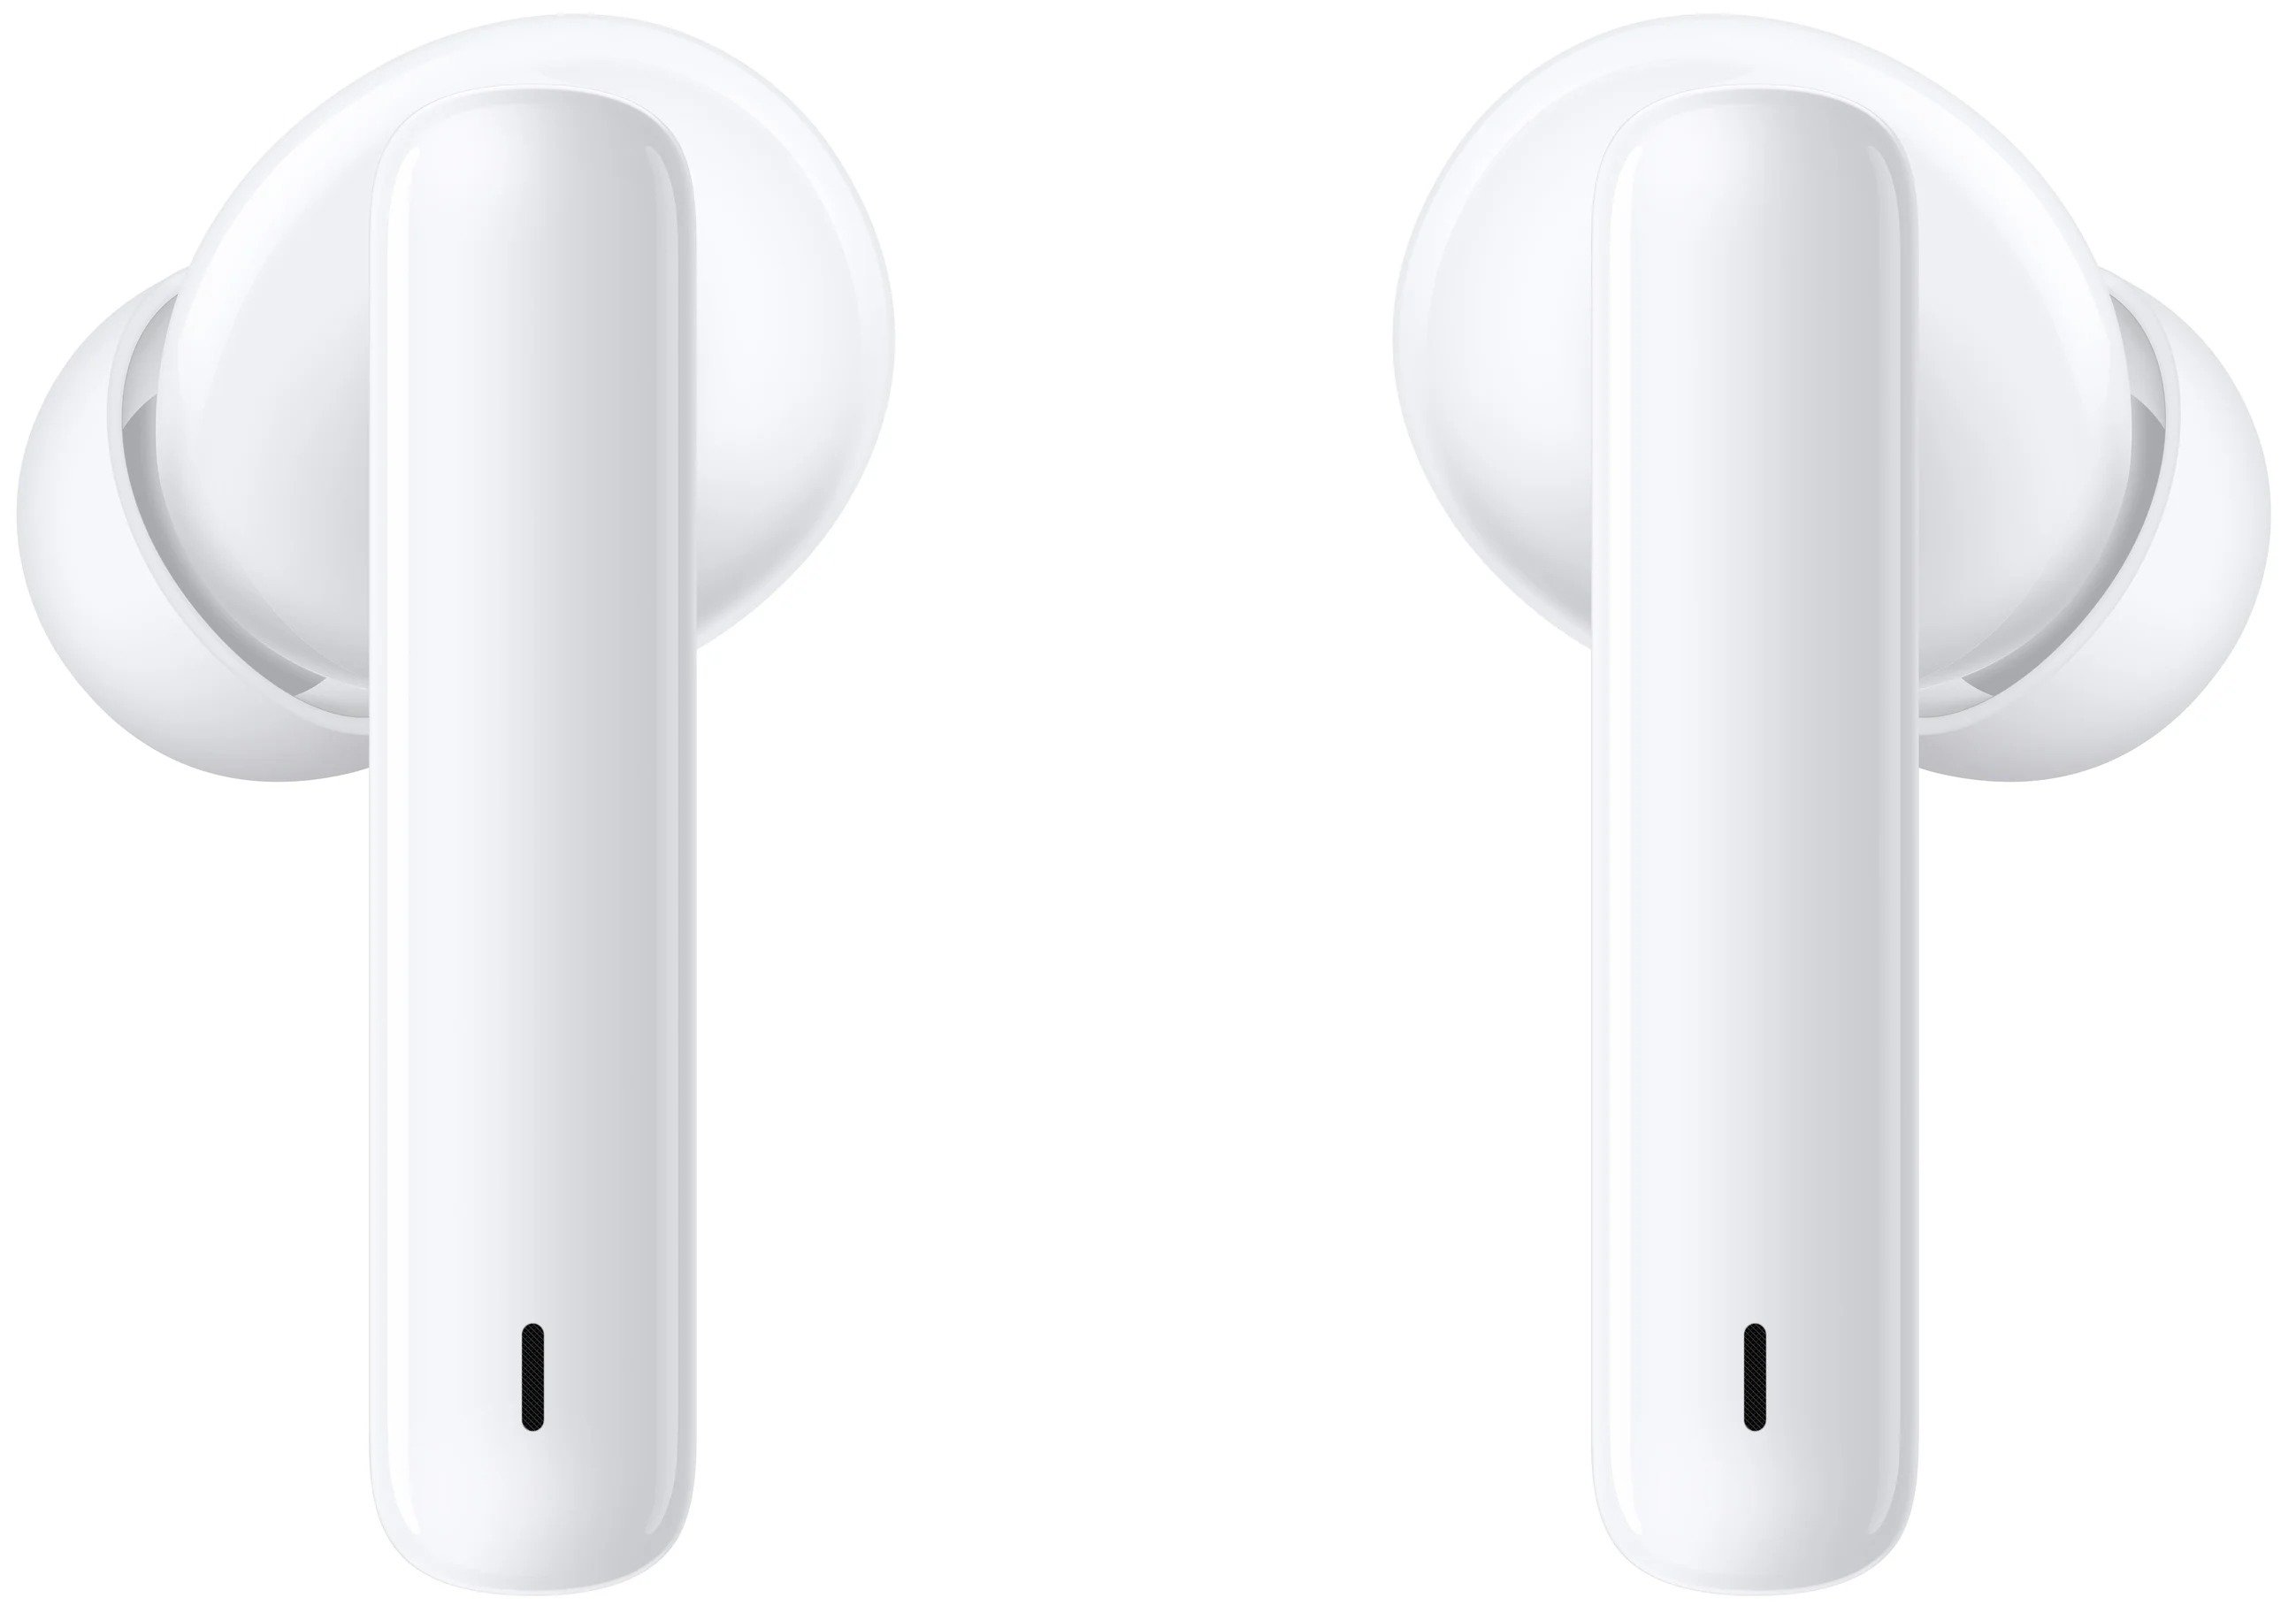 Безпровідна Bluetooth гарнітура Huawei Freebuds 4i Ceramic White - зображення 7